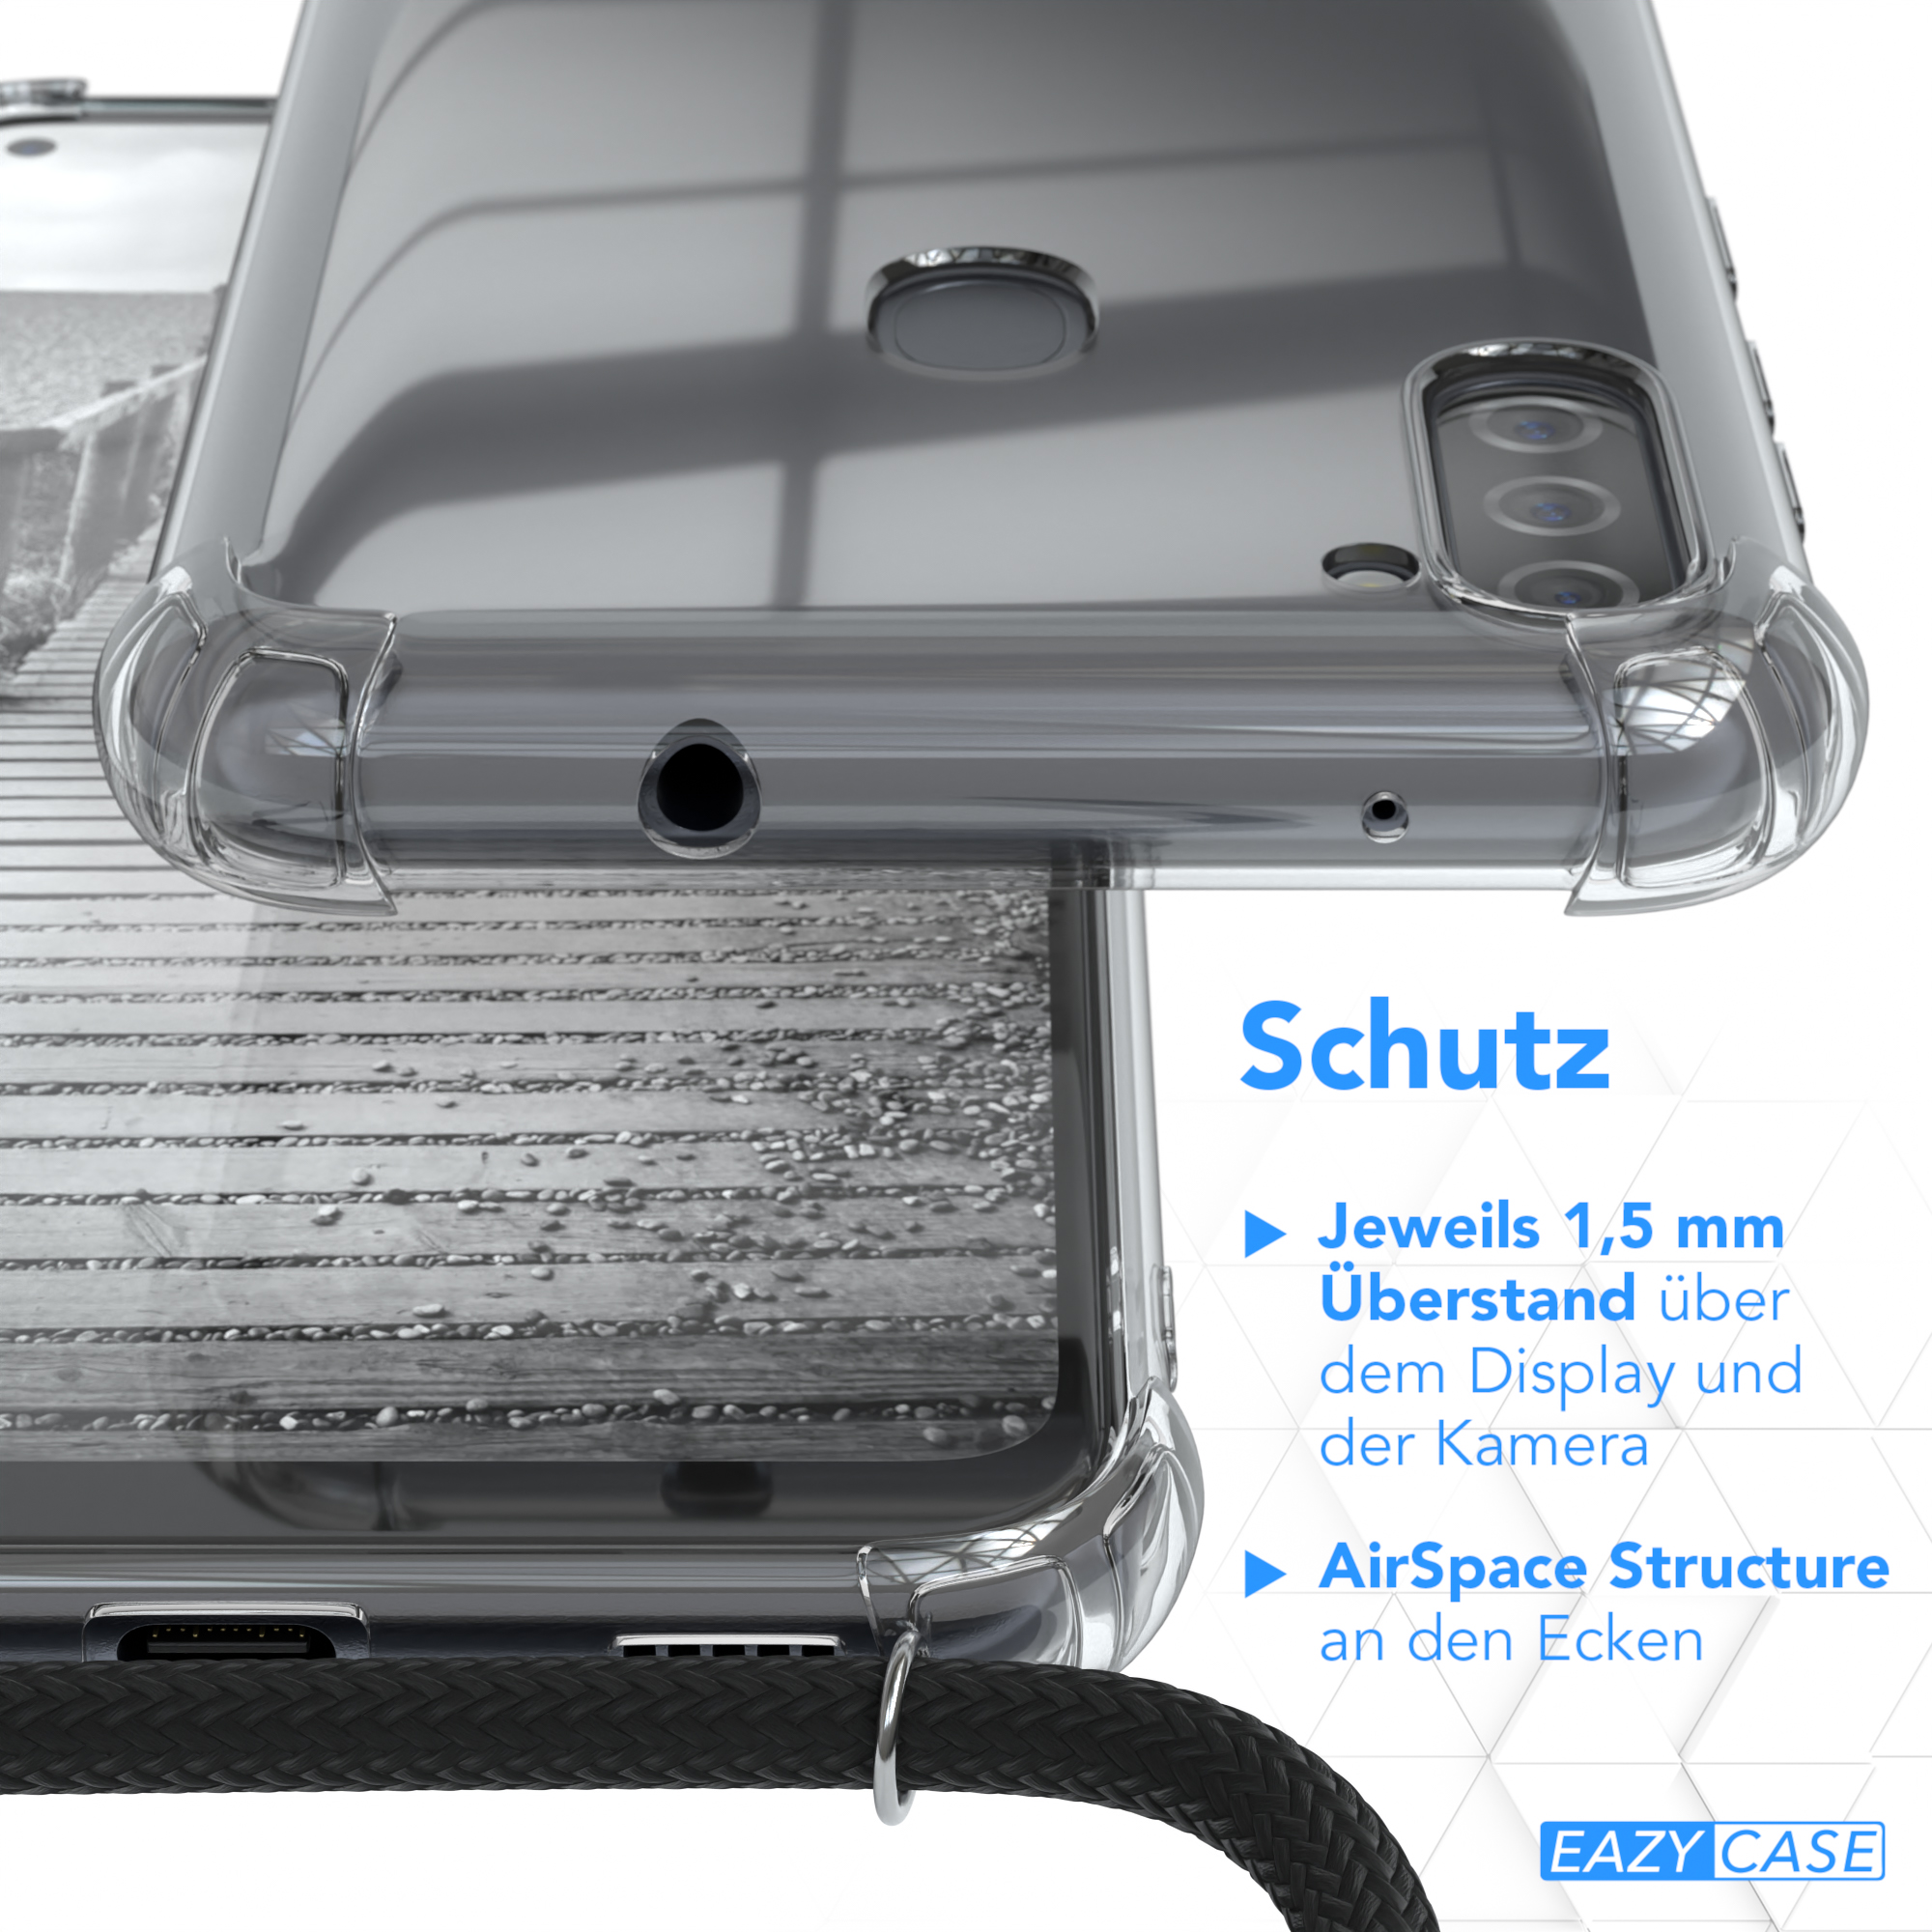 EAZY CASE Metall M11, Kordel Samsung, Umhängetasche, Schwarz, Silber + Galaxy Handykette extra